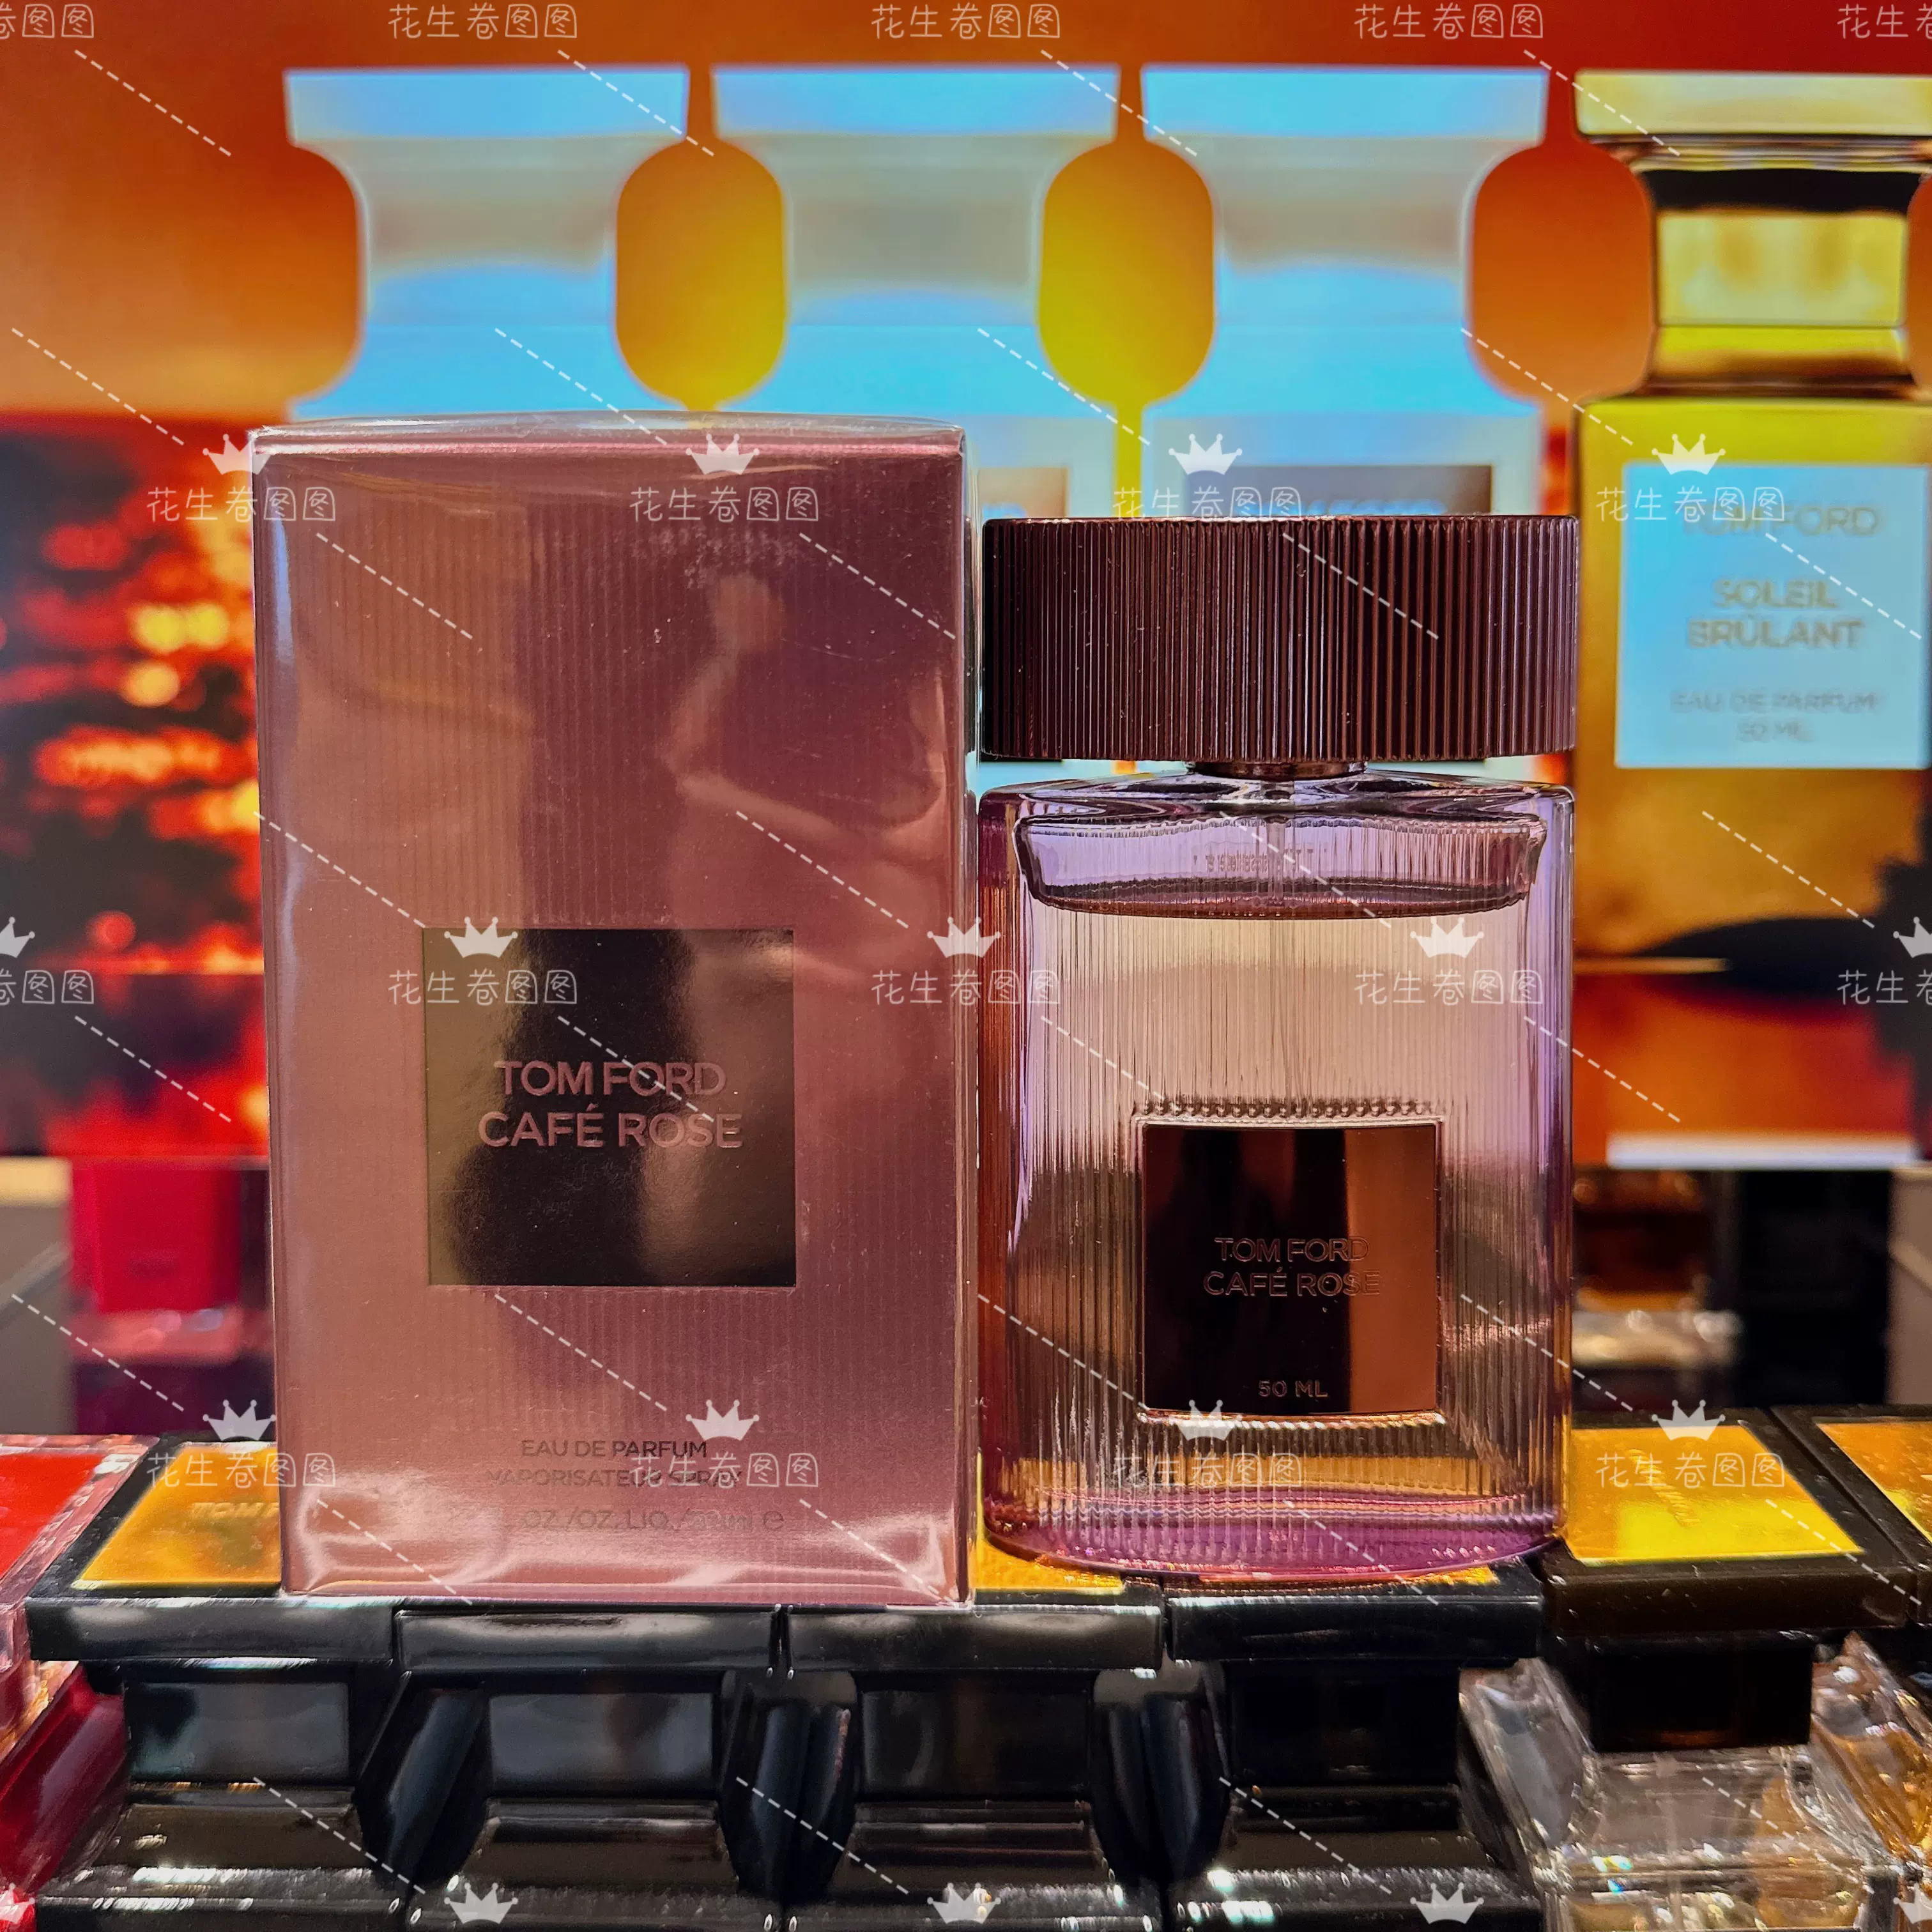 新品Tom Ford TF汤姆福特咖啡玫瑰中性香水木质花香经典回归-Taobao